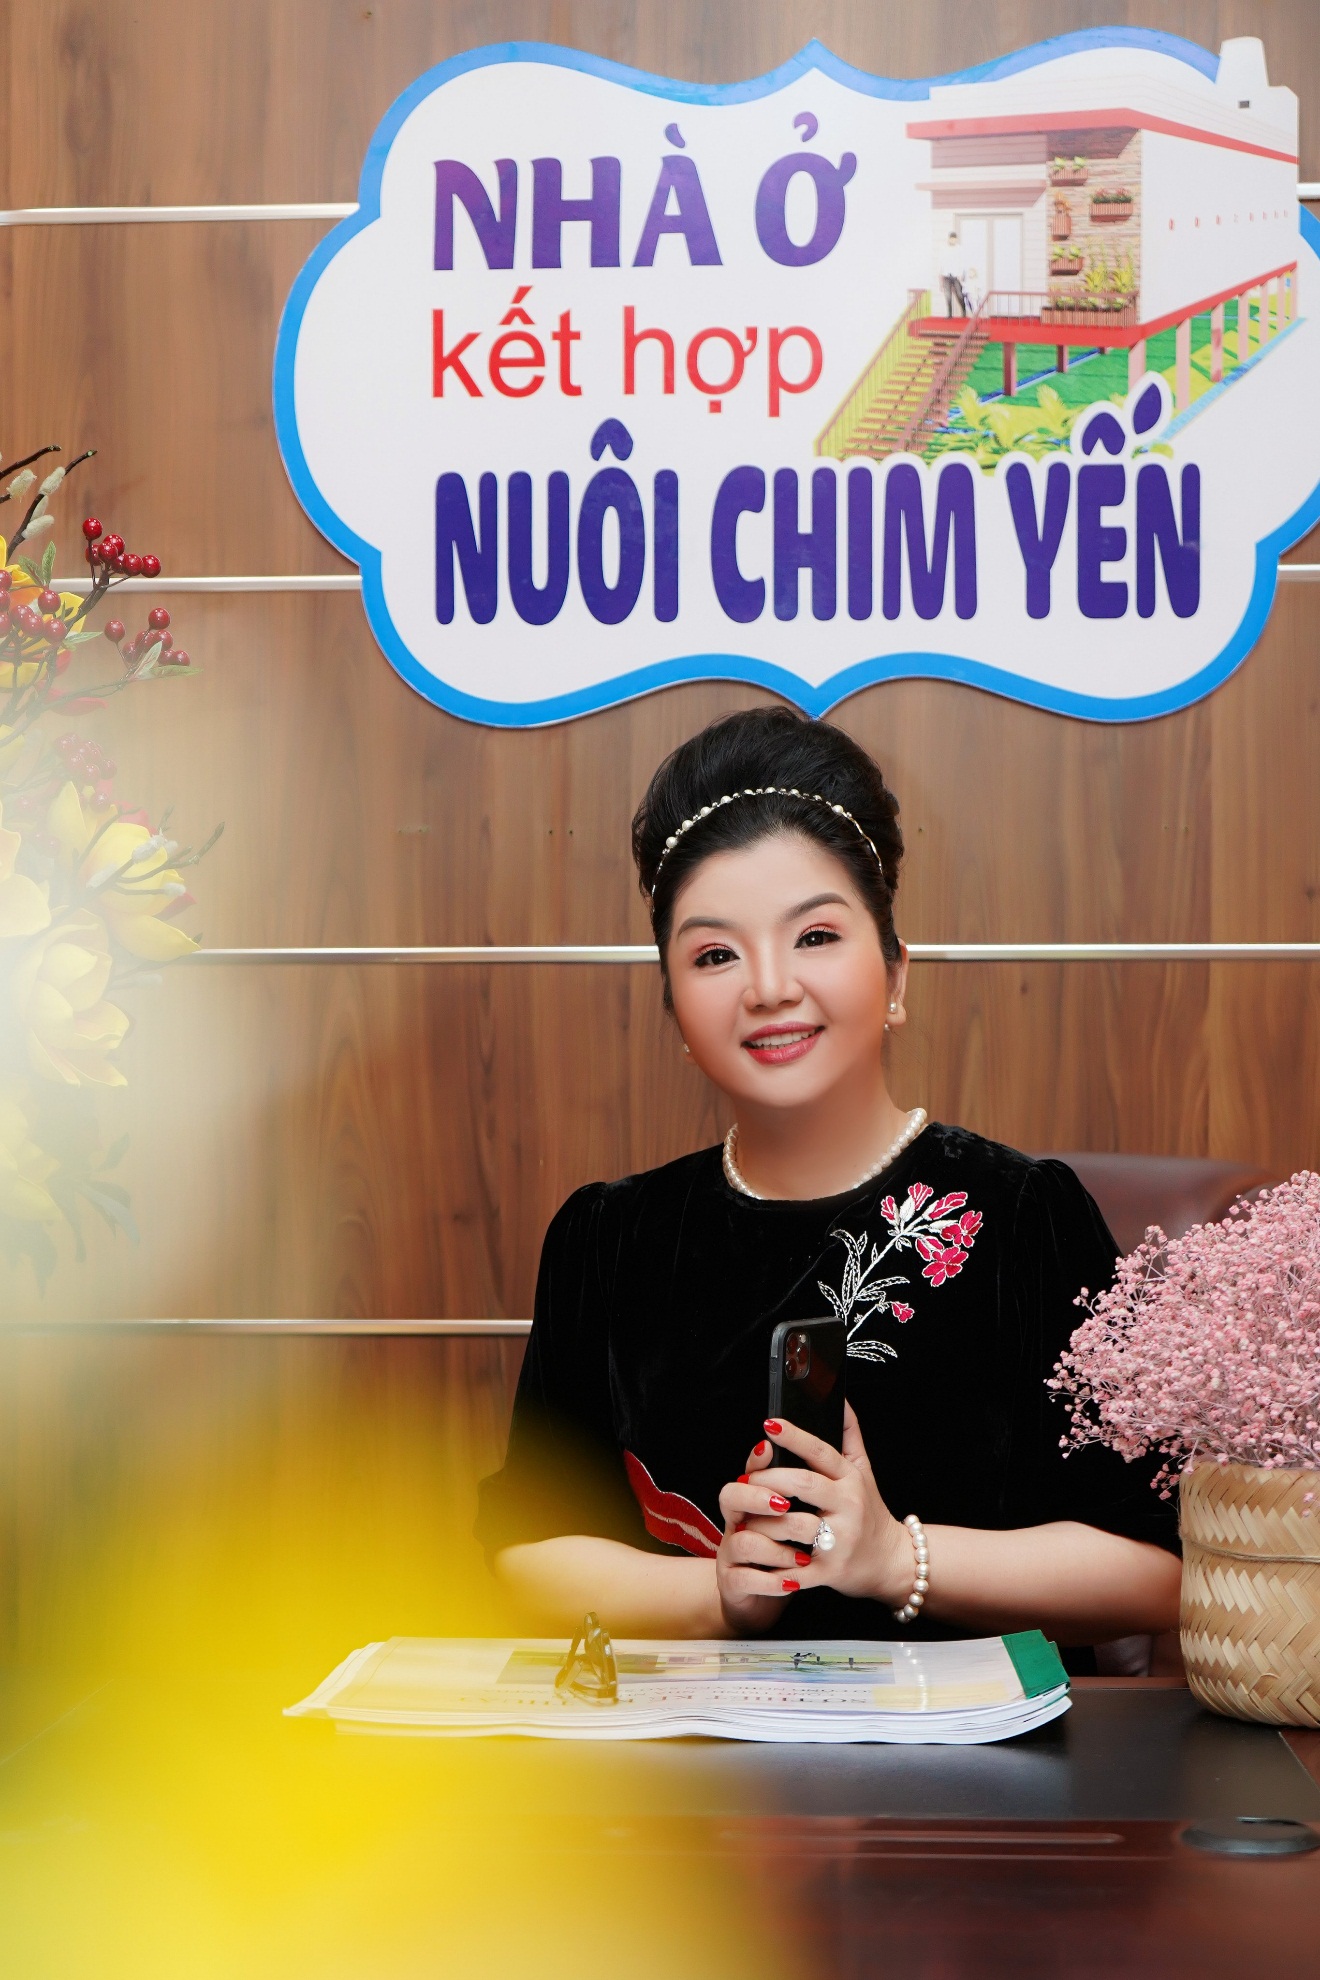 Phụ nữ hiện đại không ngại đầu tư - CEO Nguyễn Thị Thuỳ Dung chia sẻ